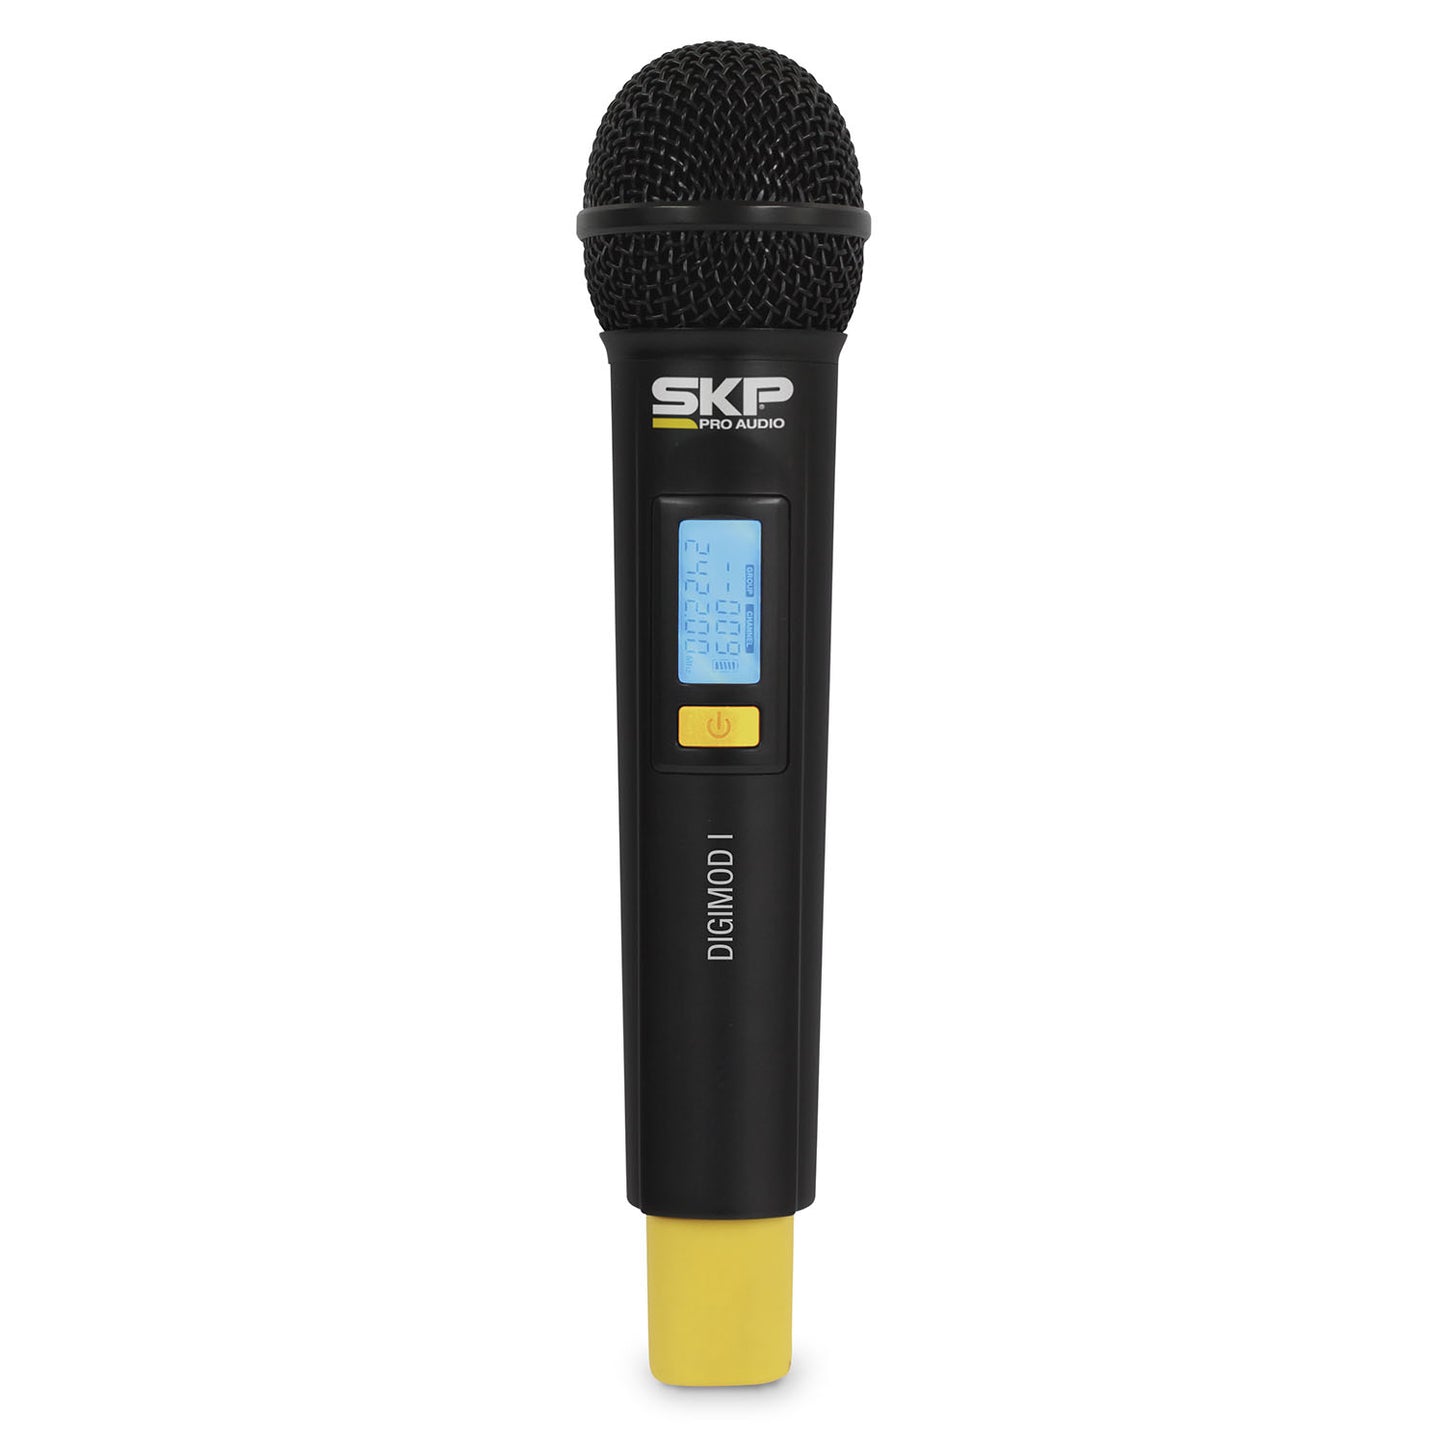 DIGIMOD-I Wireless Microphone